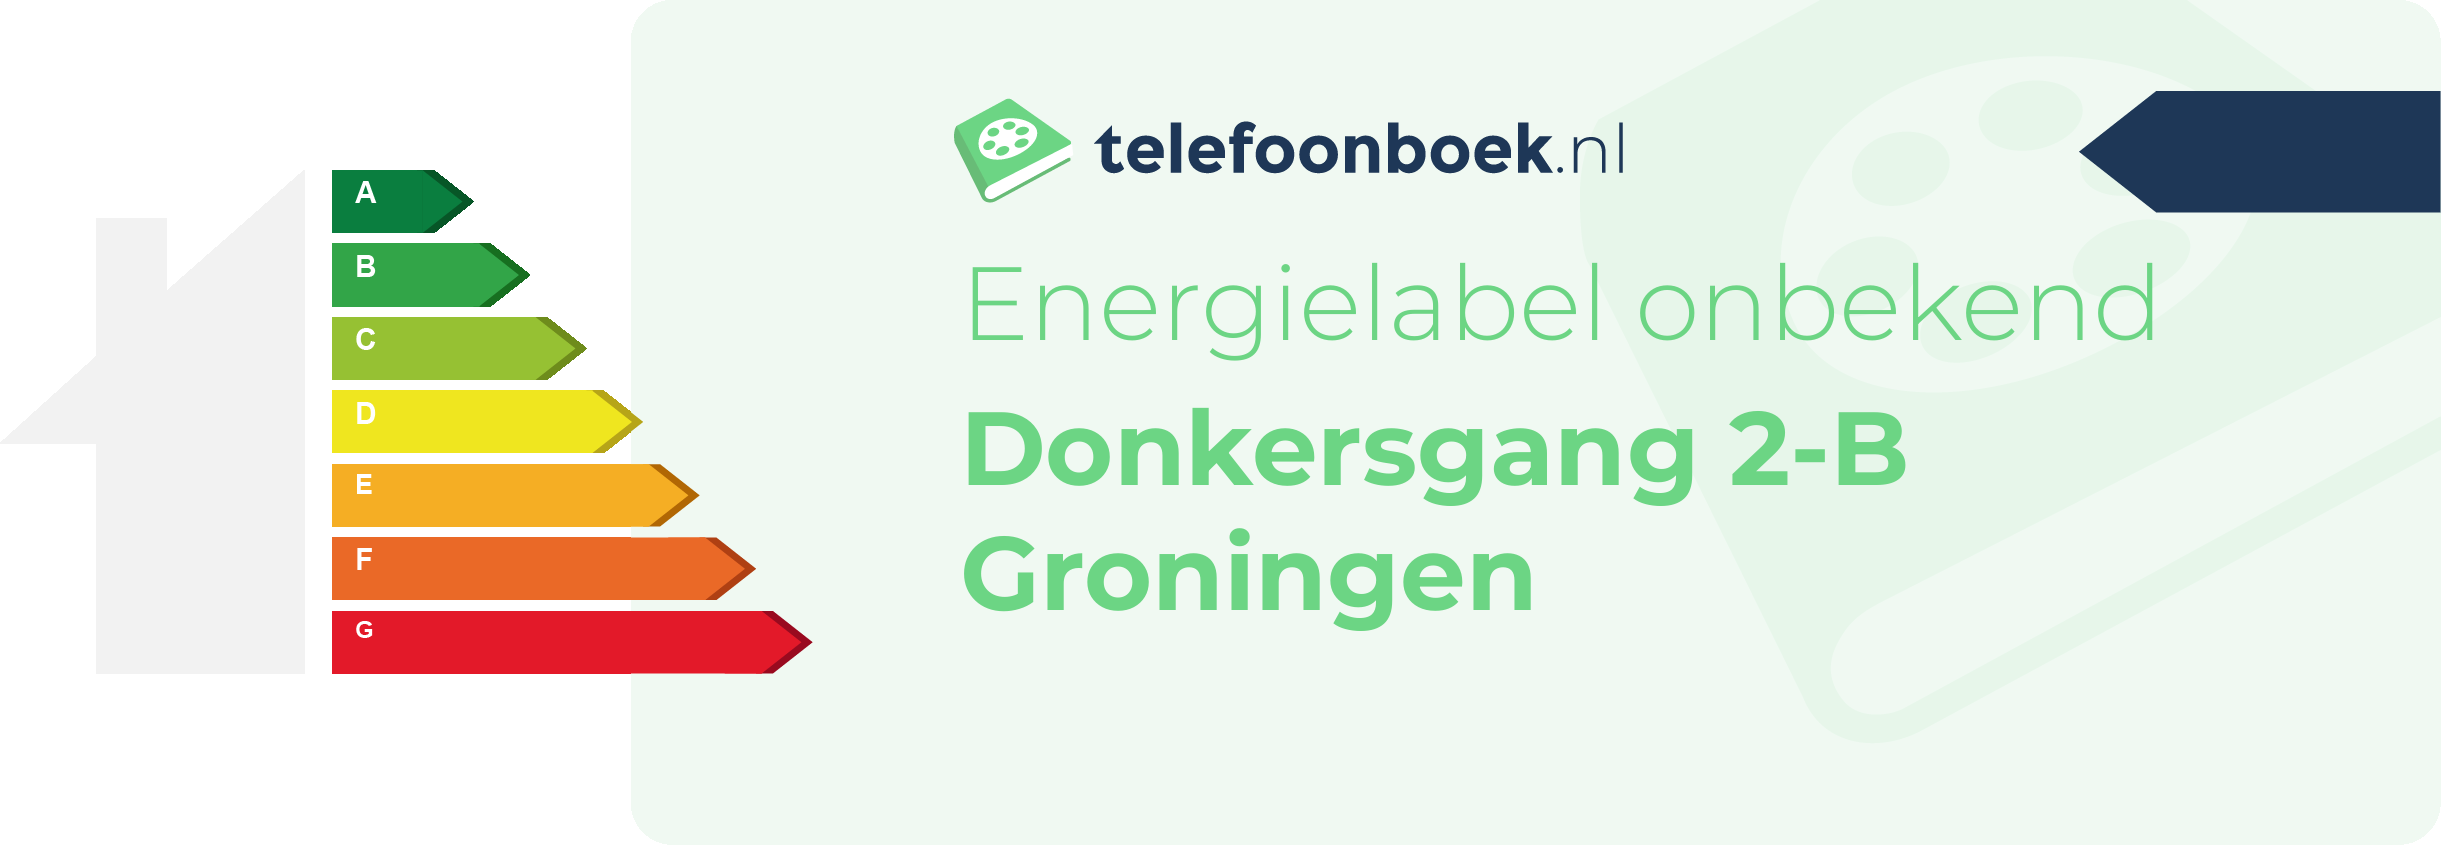 Energielabel Donkersgang 2-B Groningen